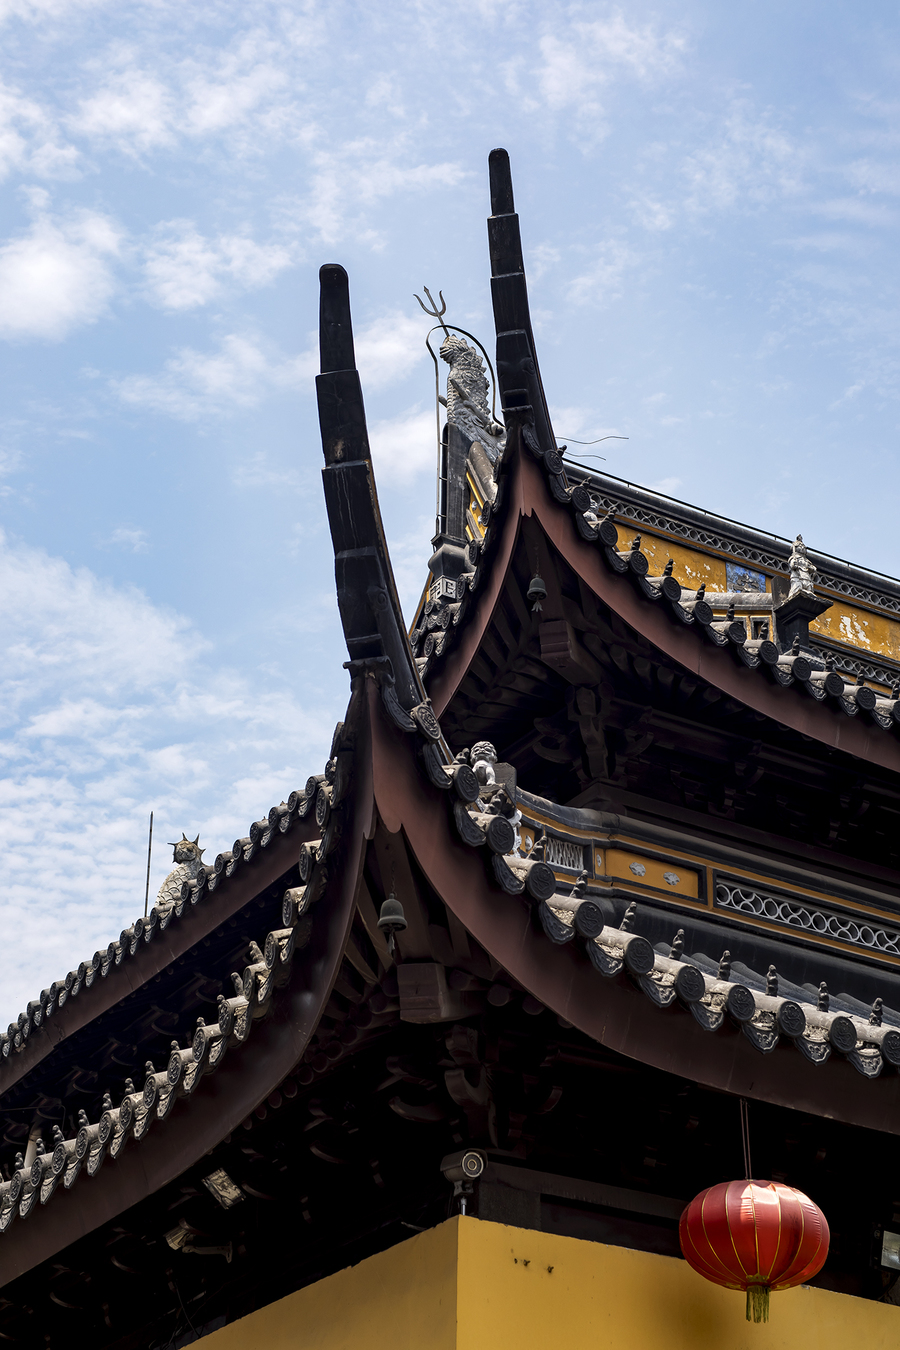 宁波西林禅寺图片